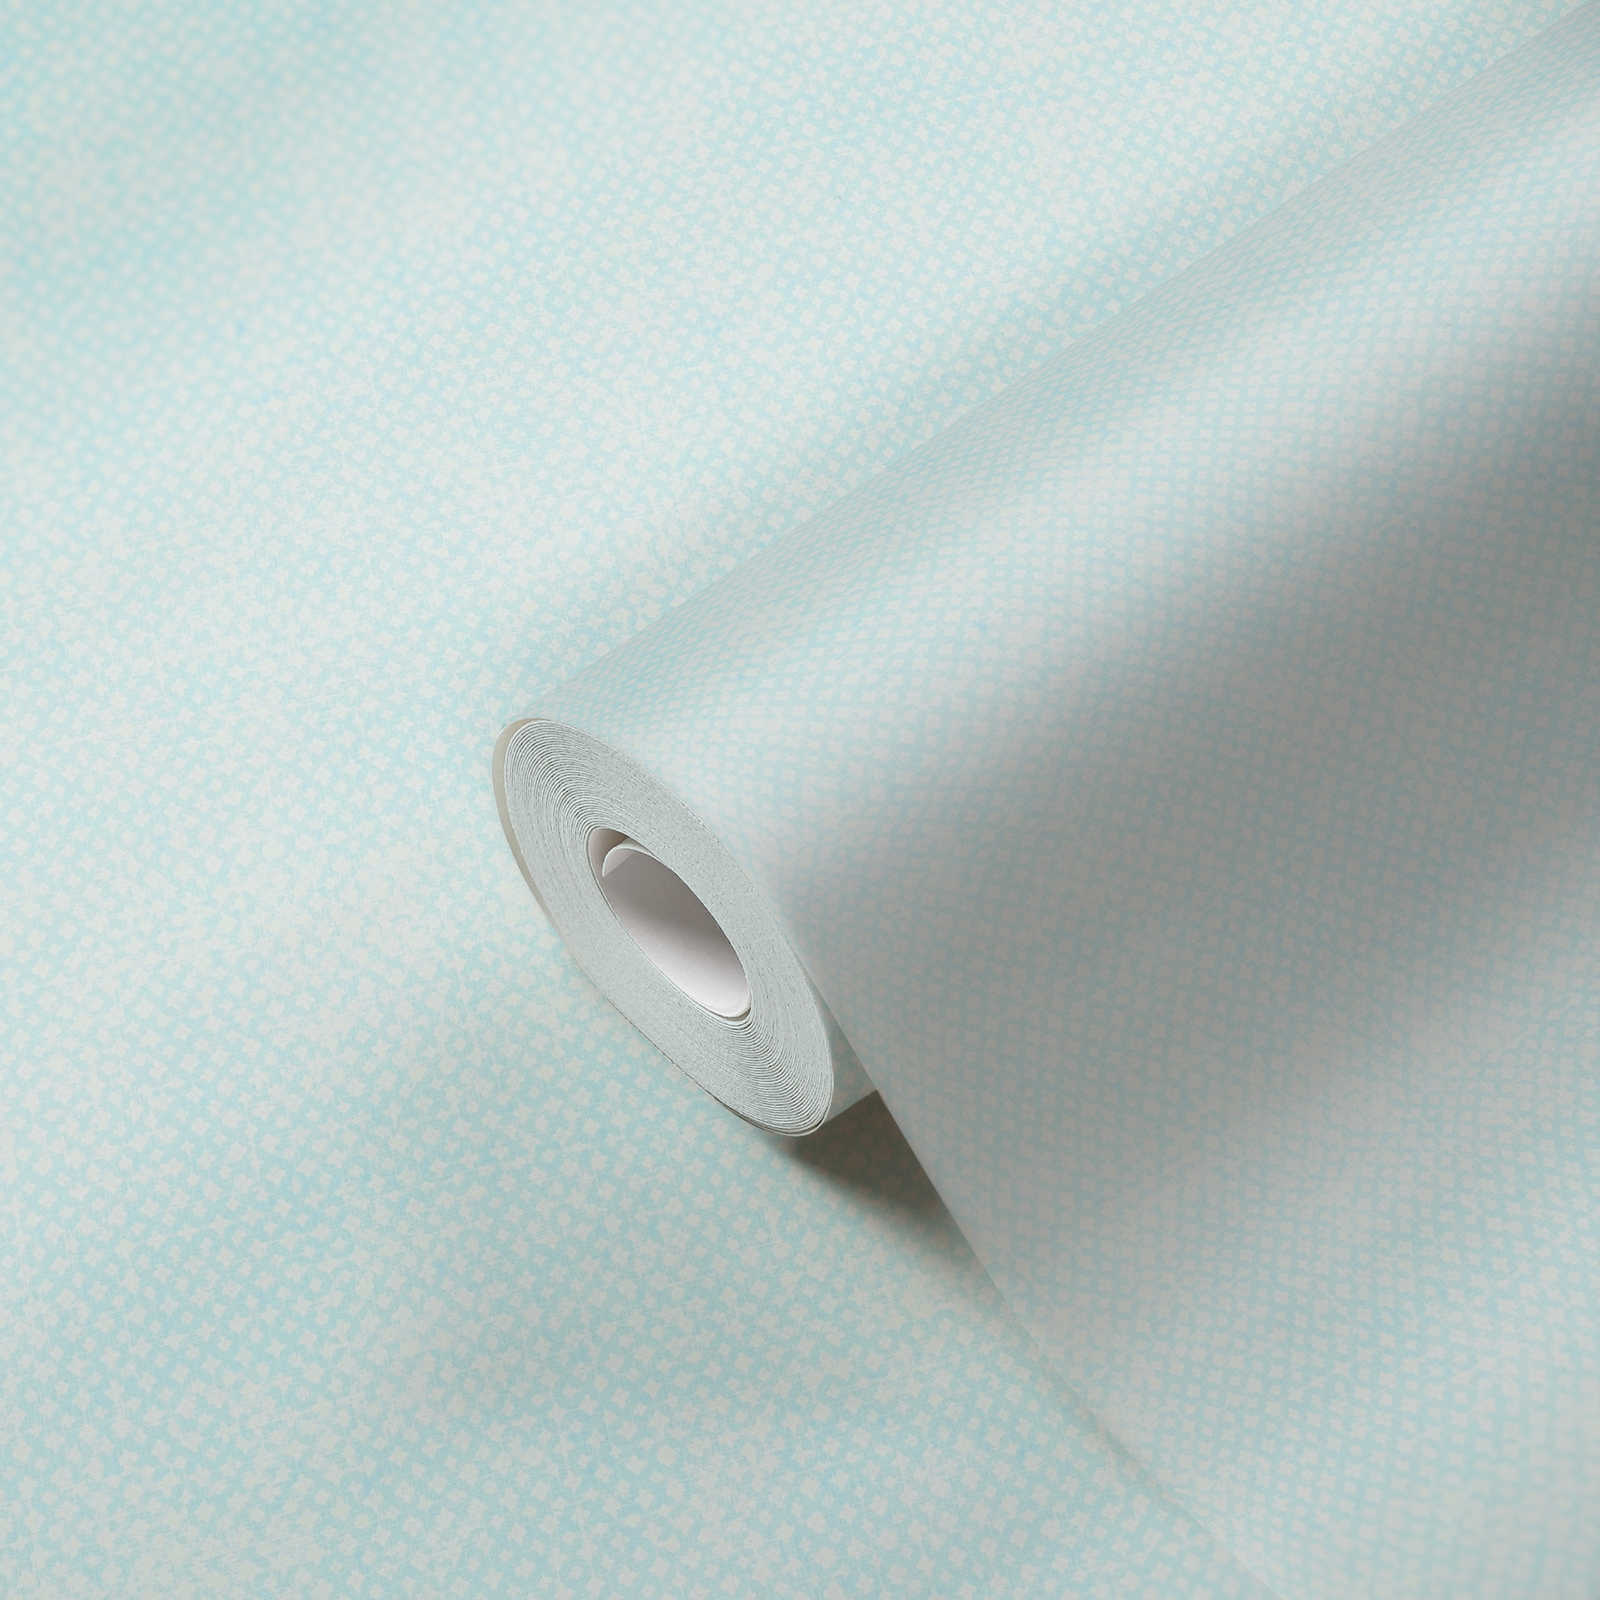             Carta da parati in tessuto non tessuto con motivo a trama fine - blu, bianco
        